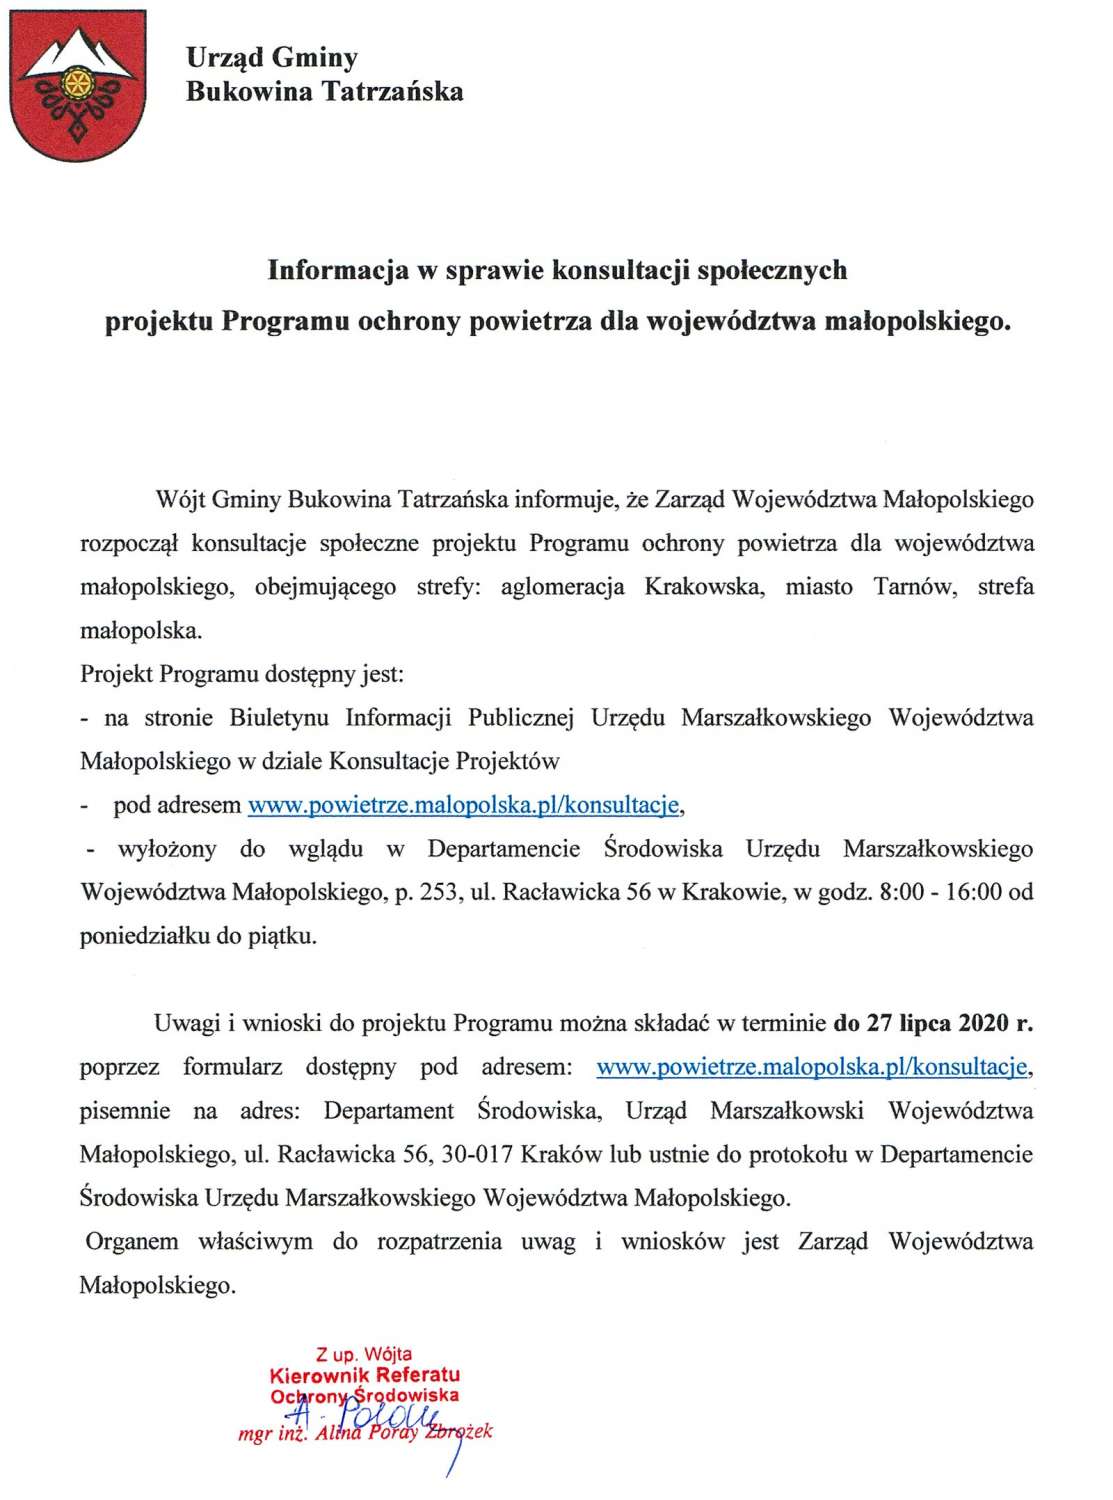 Informacja o konsultacjach społecznych Programu ochrony powietrza dla województwa małopolskiego